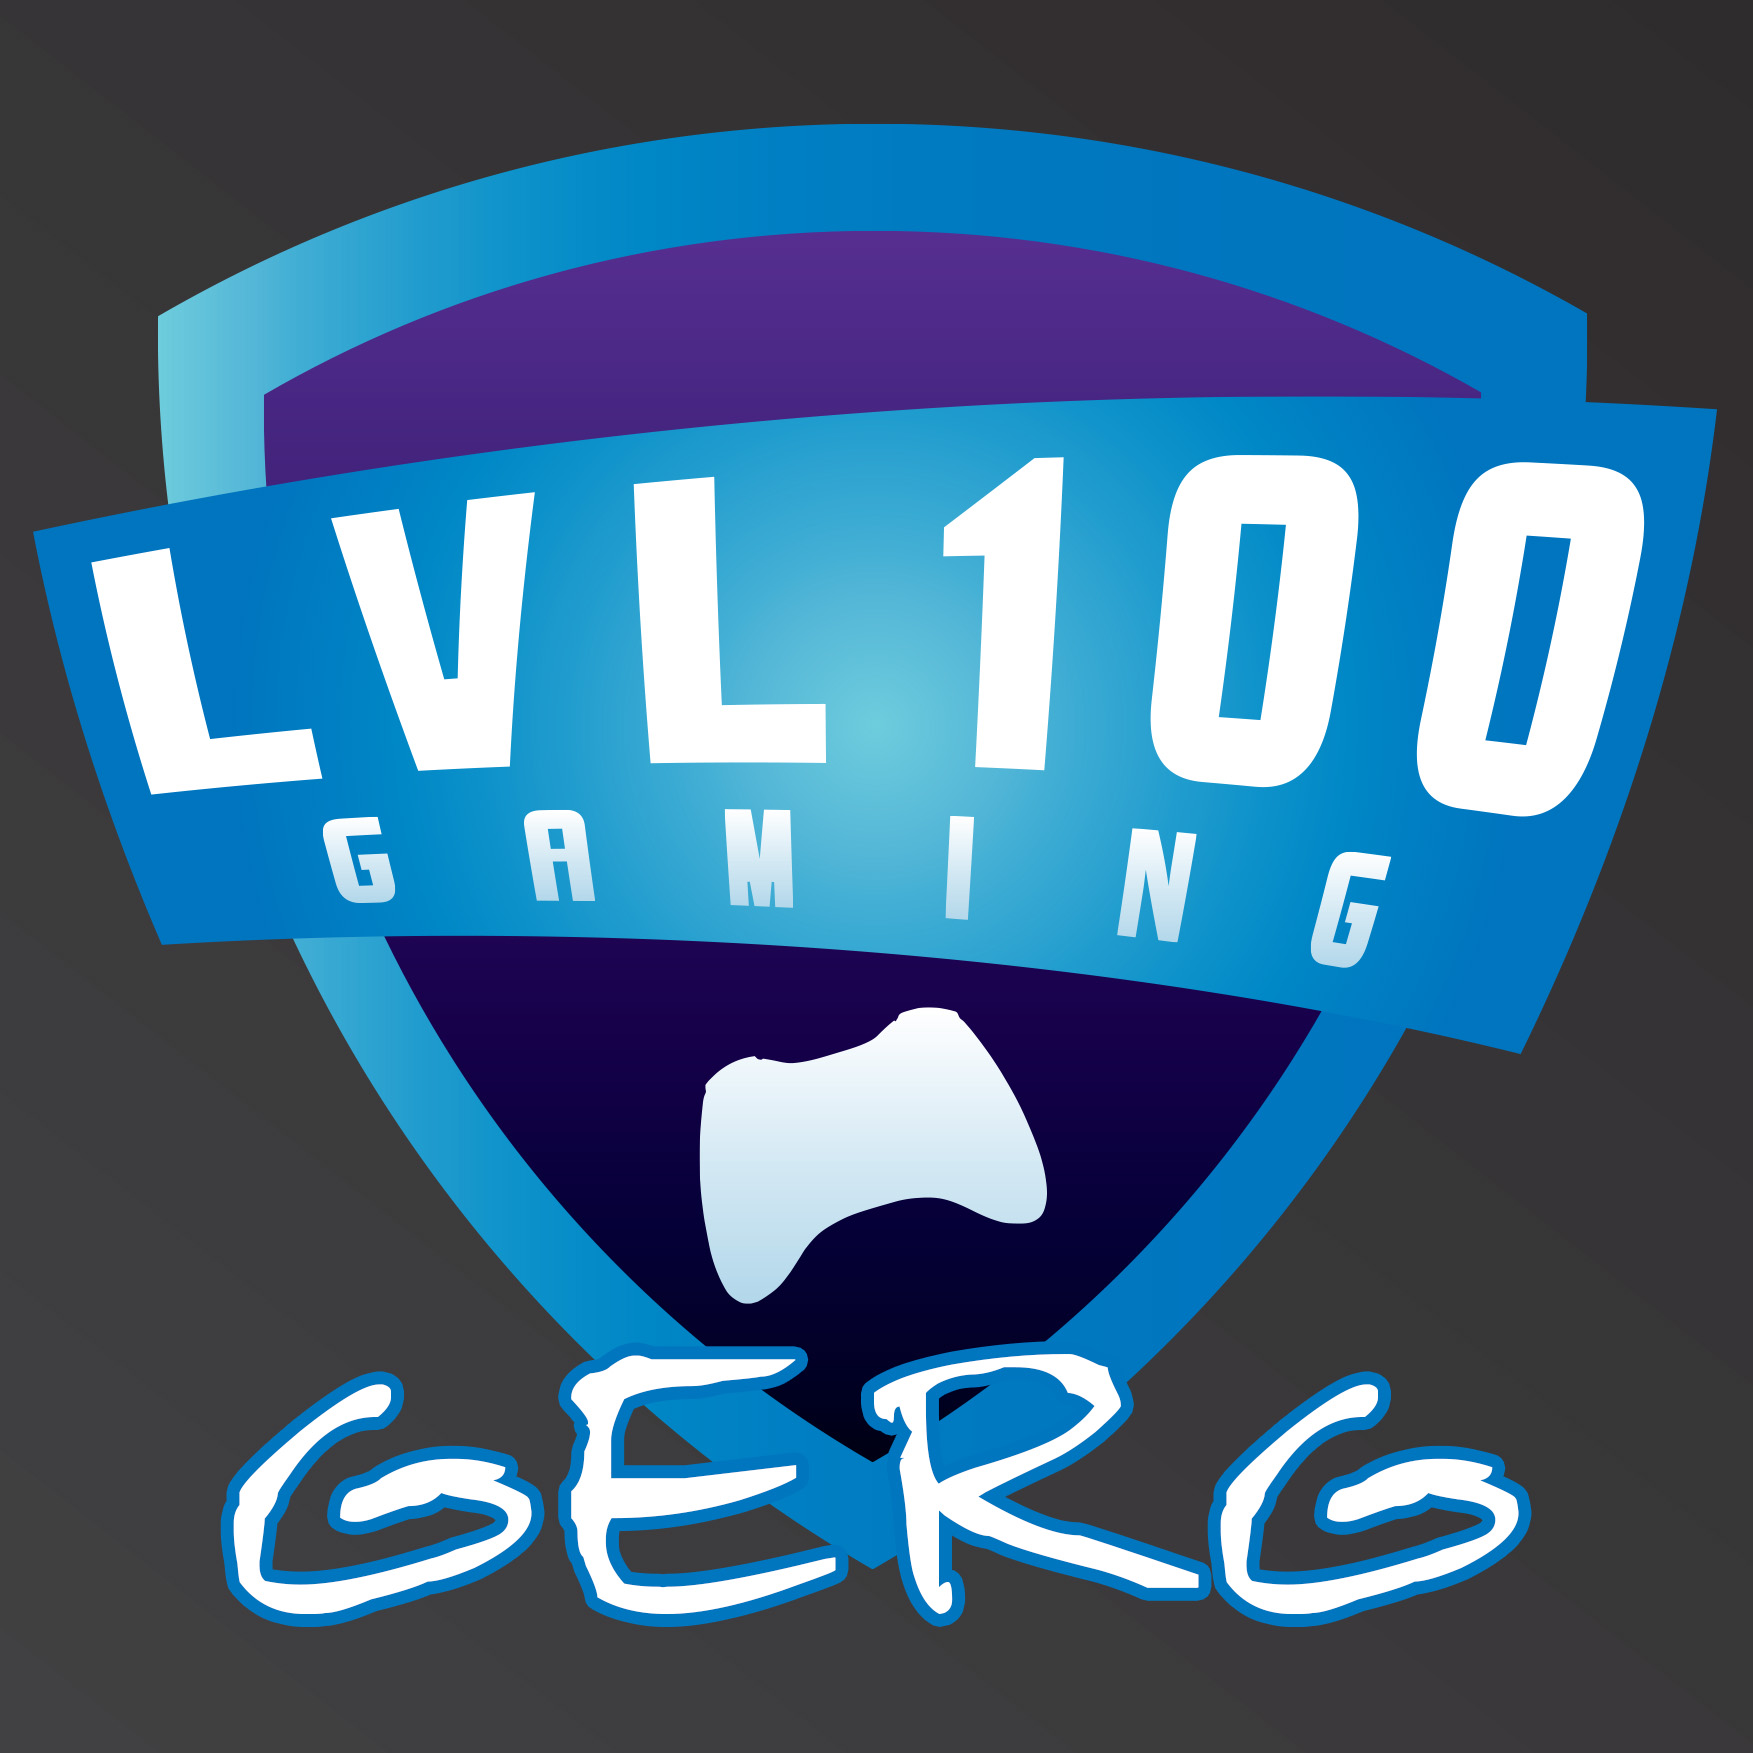 LVL100_GERG